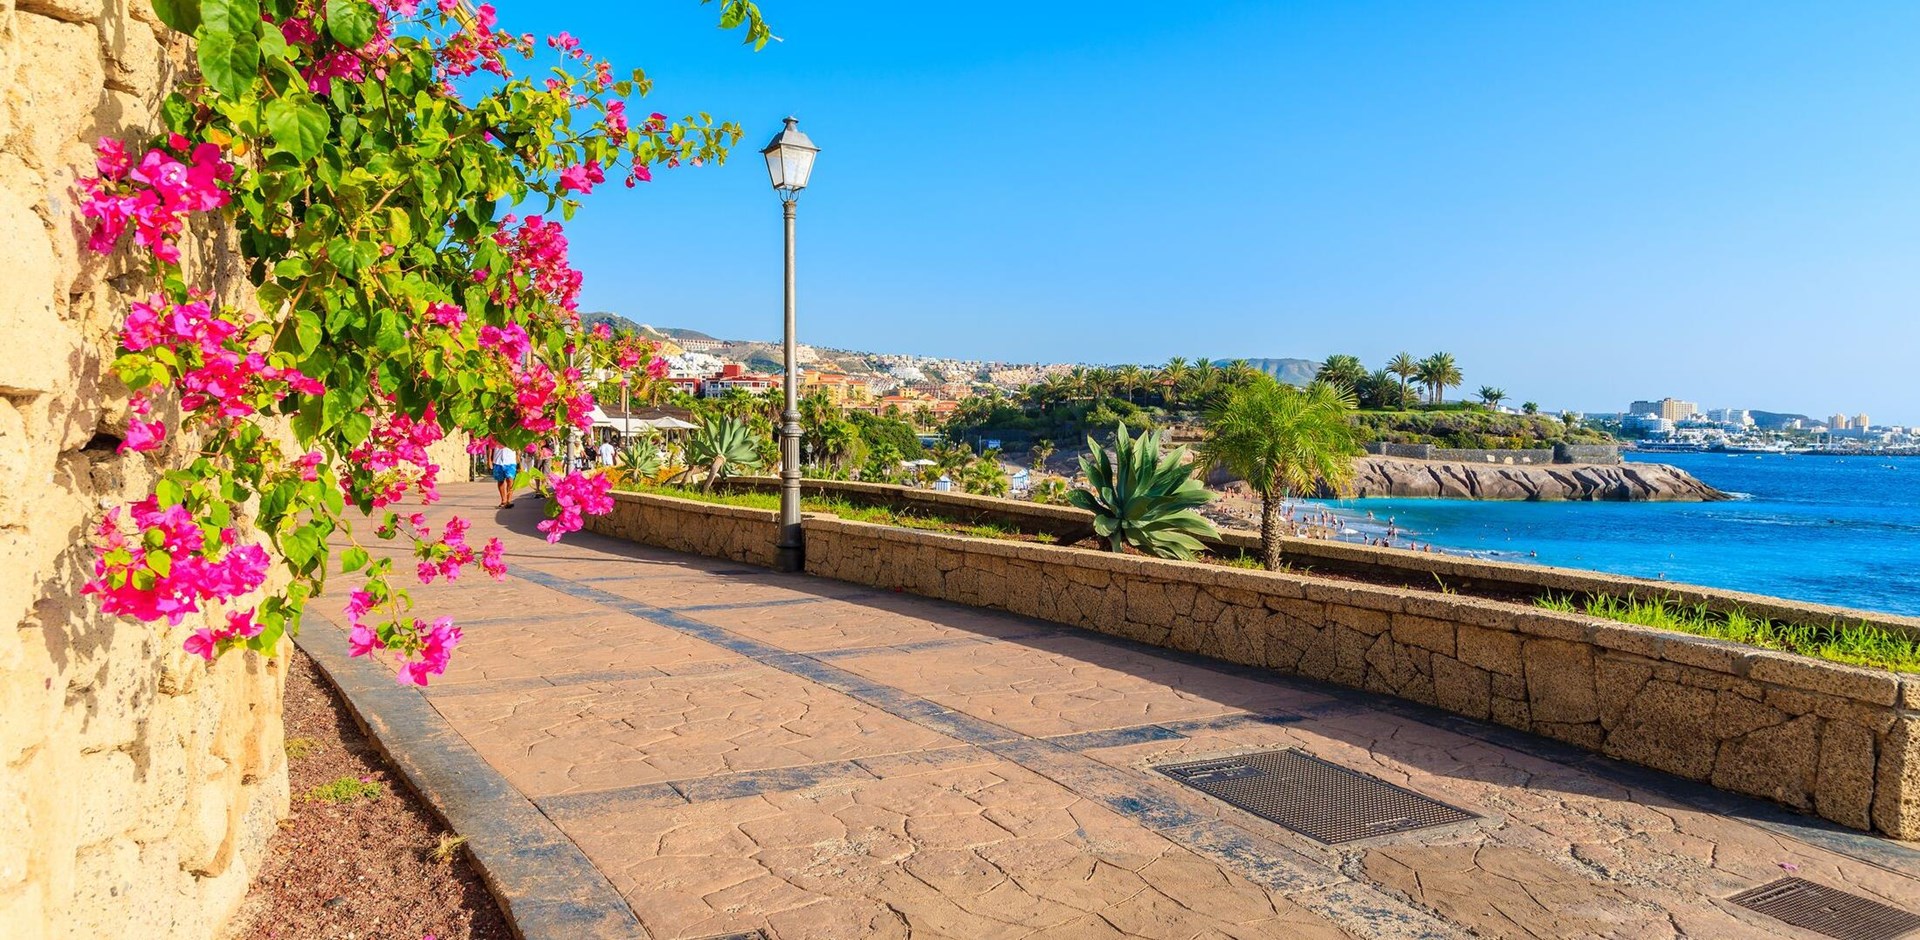 Flowers on promenade built along ocean in Costa Adeje town on southern Tenerife island, Spain